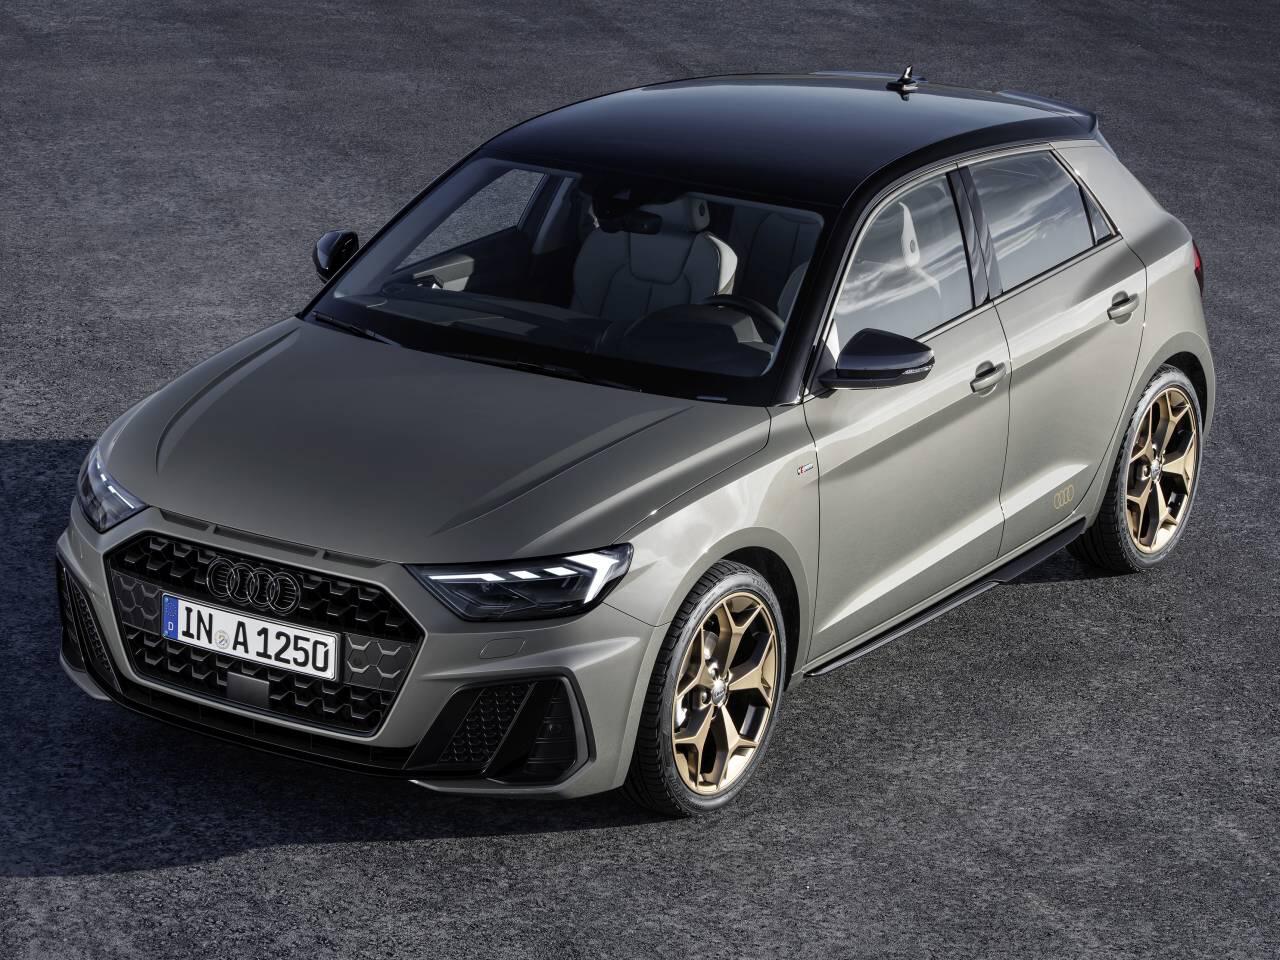 Neuer Ingolstädter auf Polo-Basis: So kommt der Audi A1 Sportback